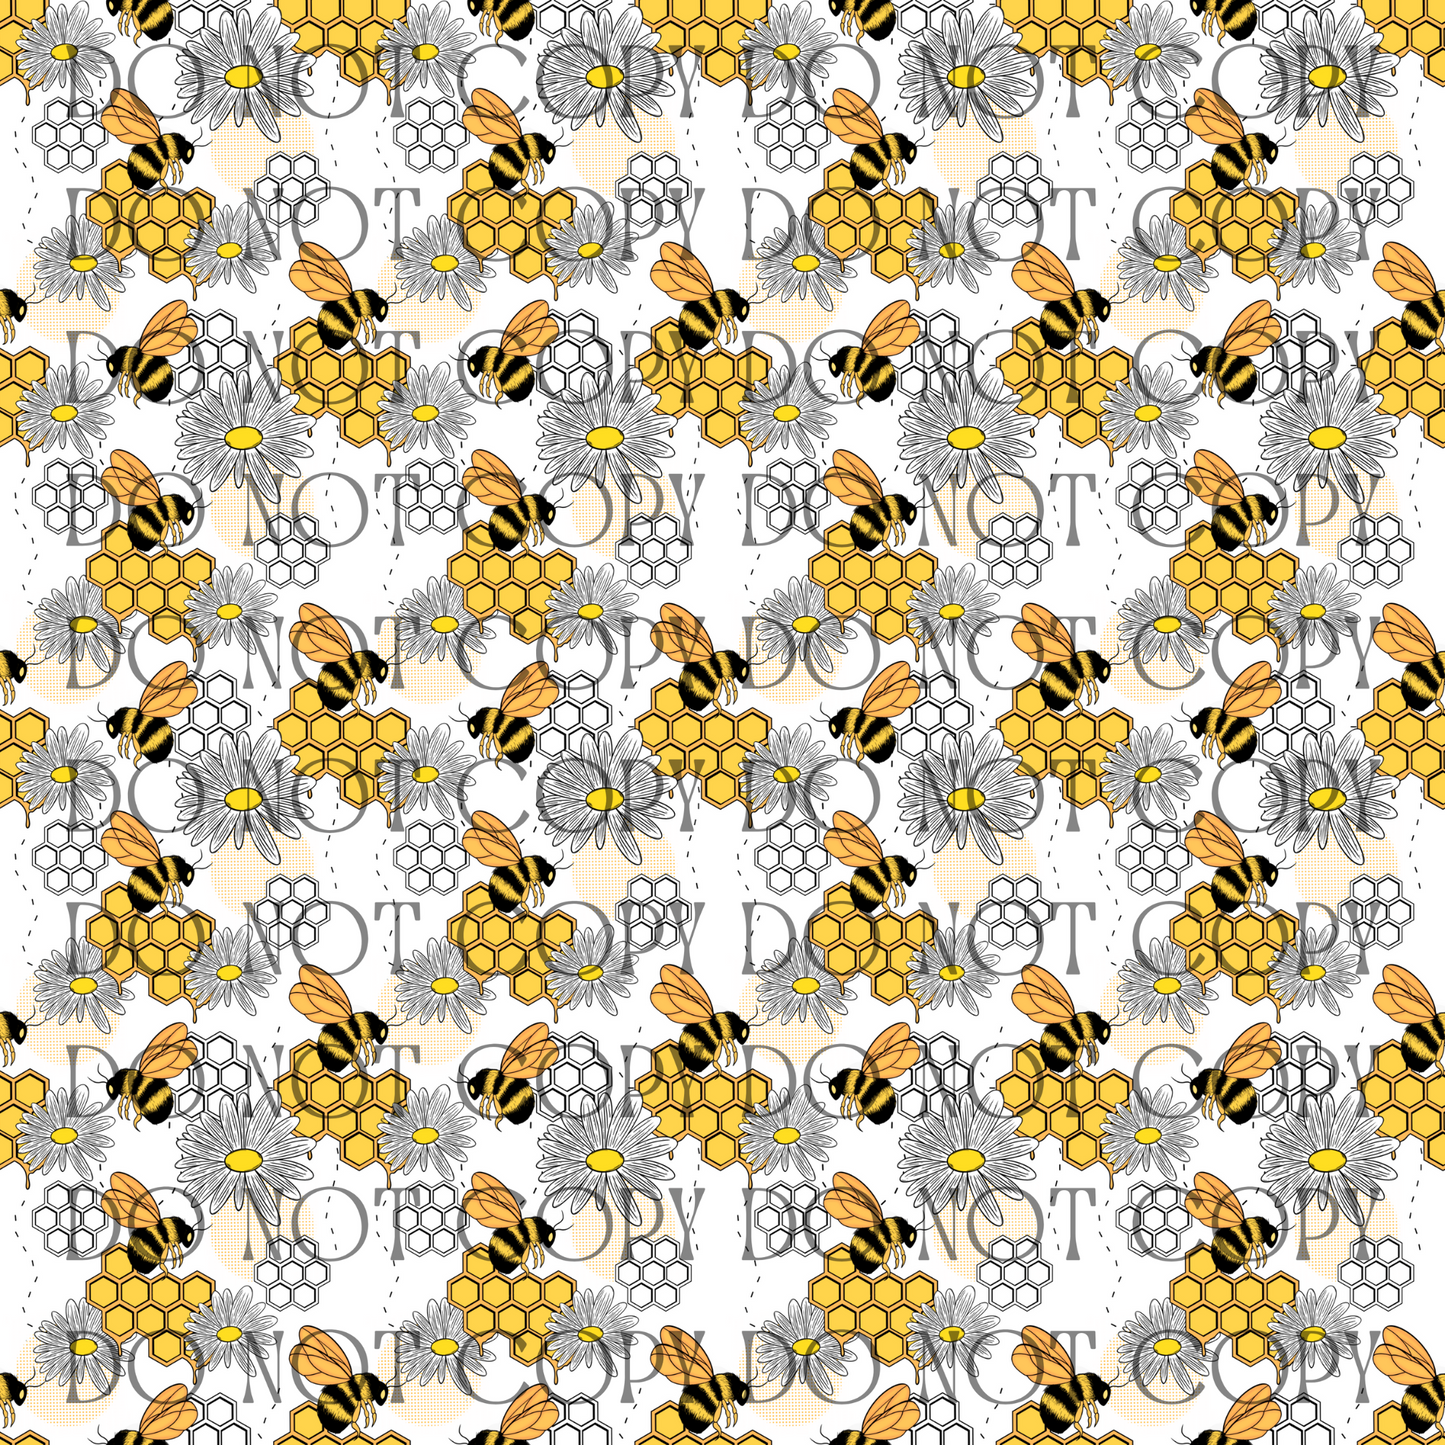 Busy Bees - Opaque Vinyl Sheet